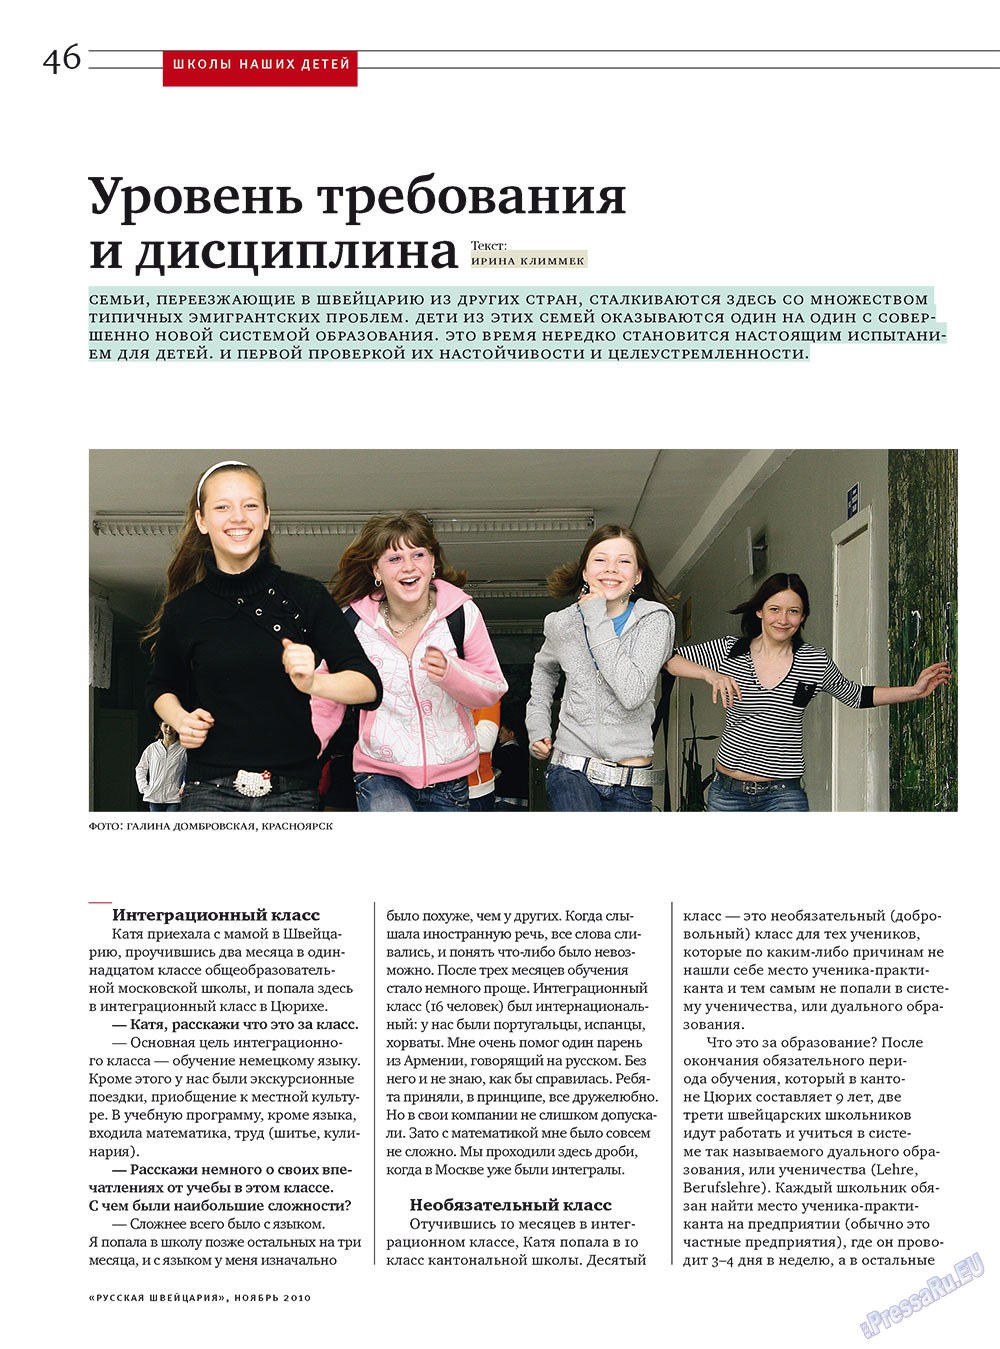 Русская Швейцария, журнал. 2010 №9 стр.46